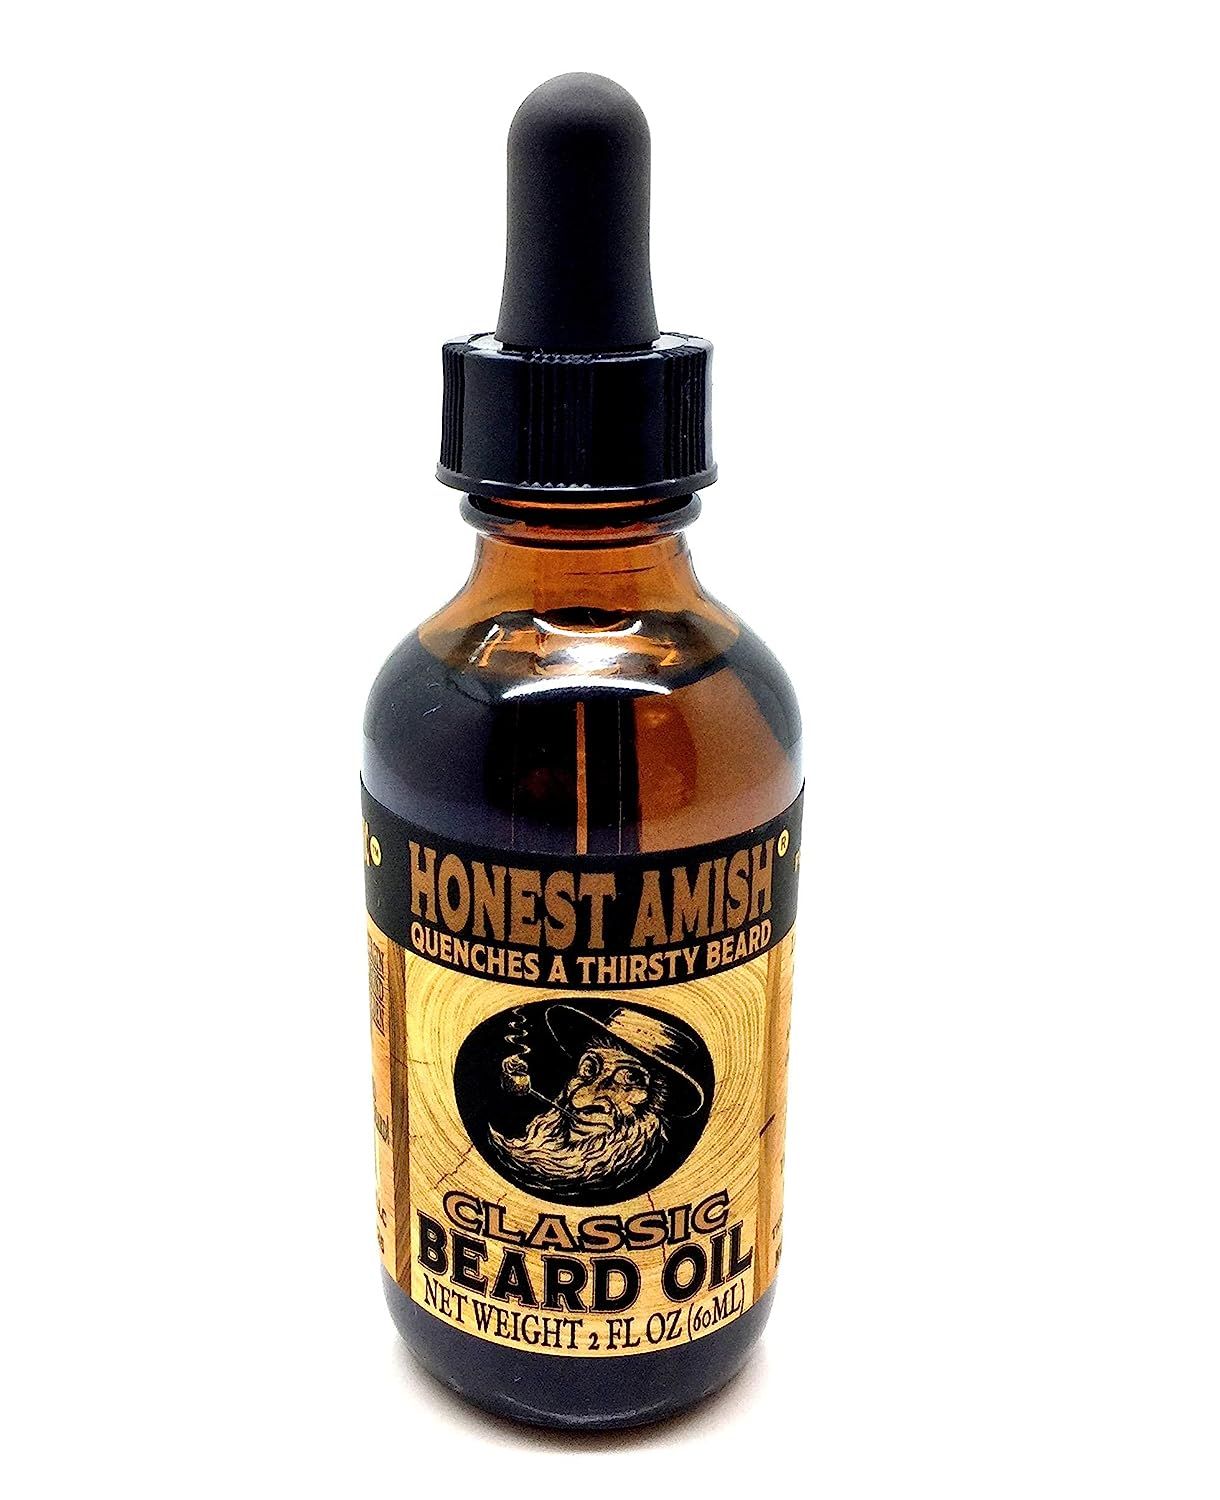 Honest Amish - Classic Beard Oil - 2 Ounce | Amazon (US)